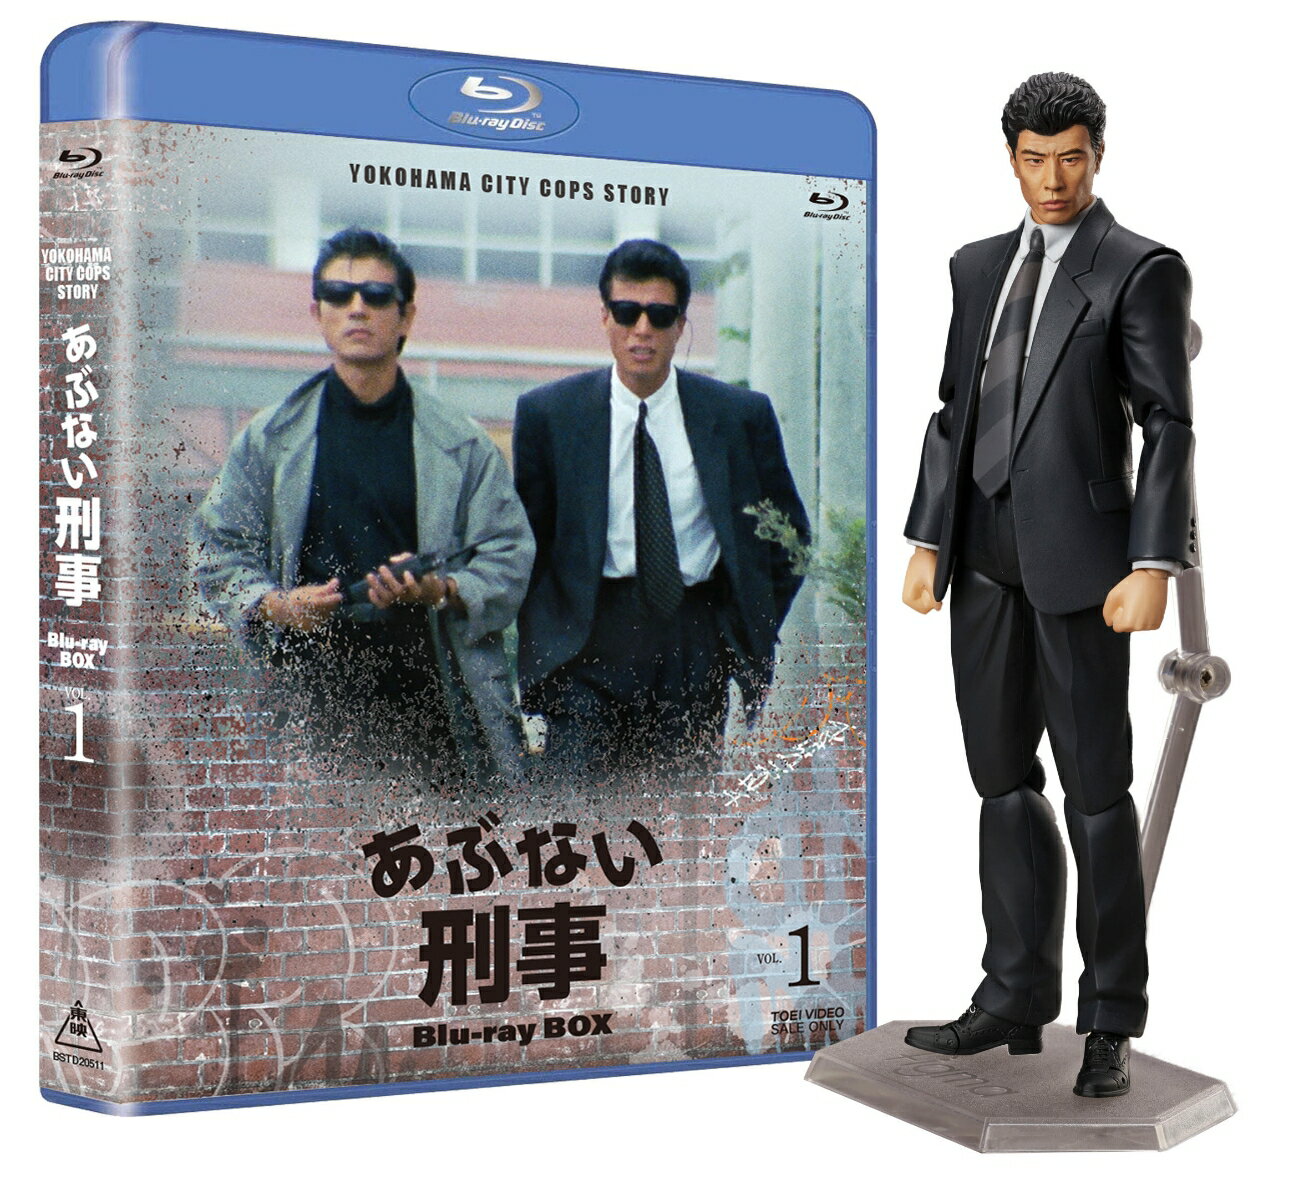 あぶない刑事 Blu-ray BOX VOL.1 タカフィギュア付き【Blu-ray】